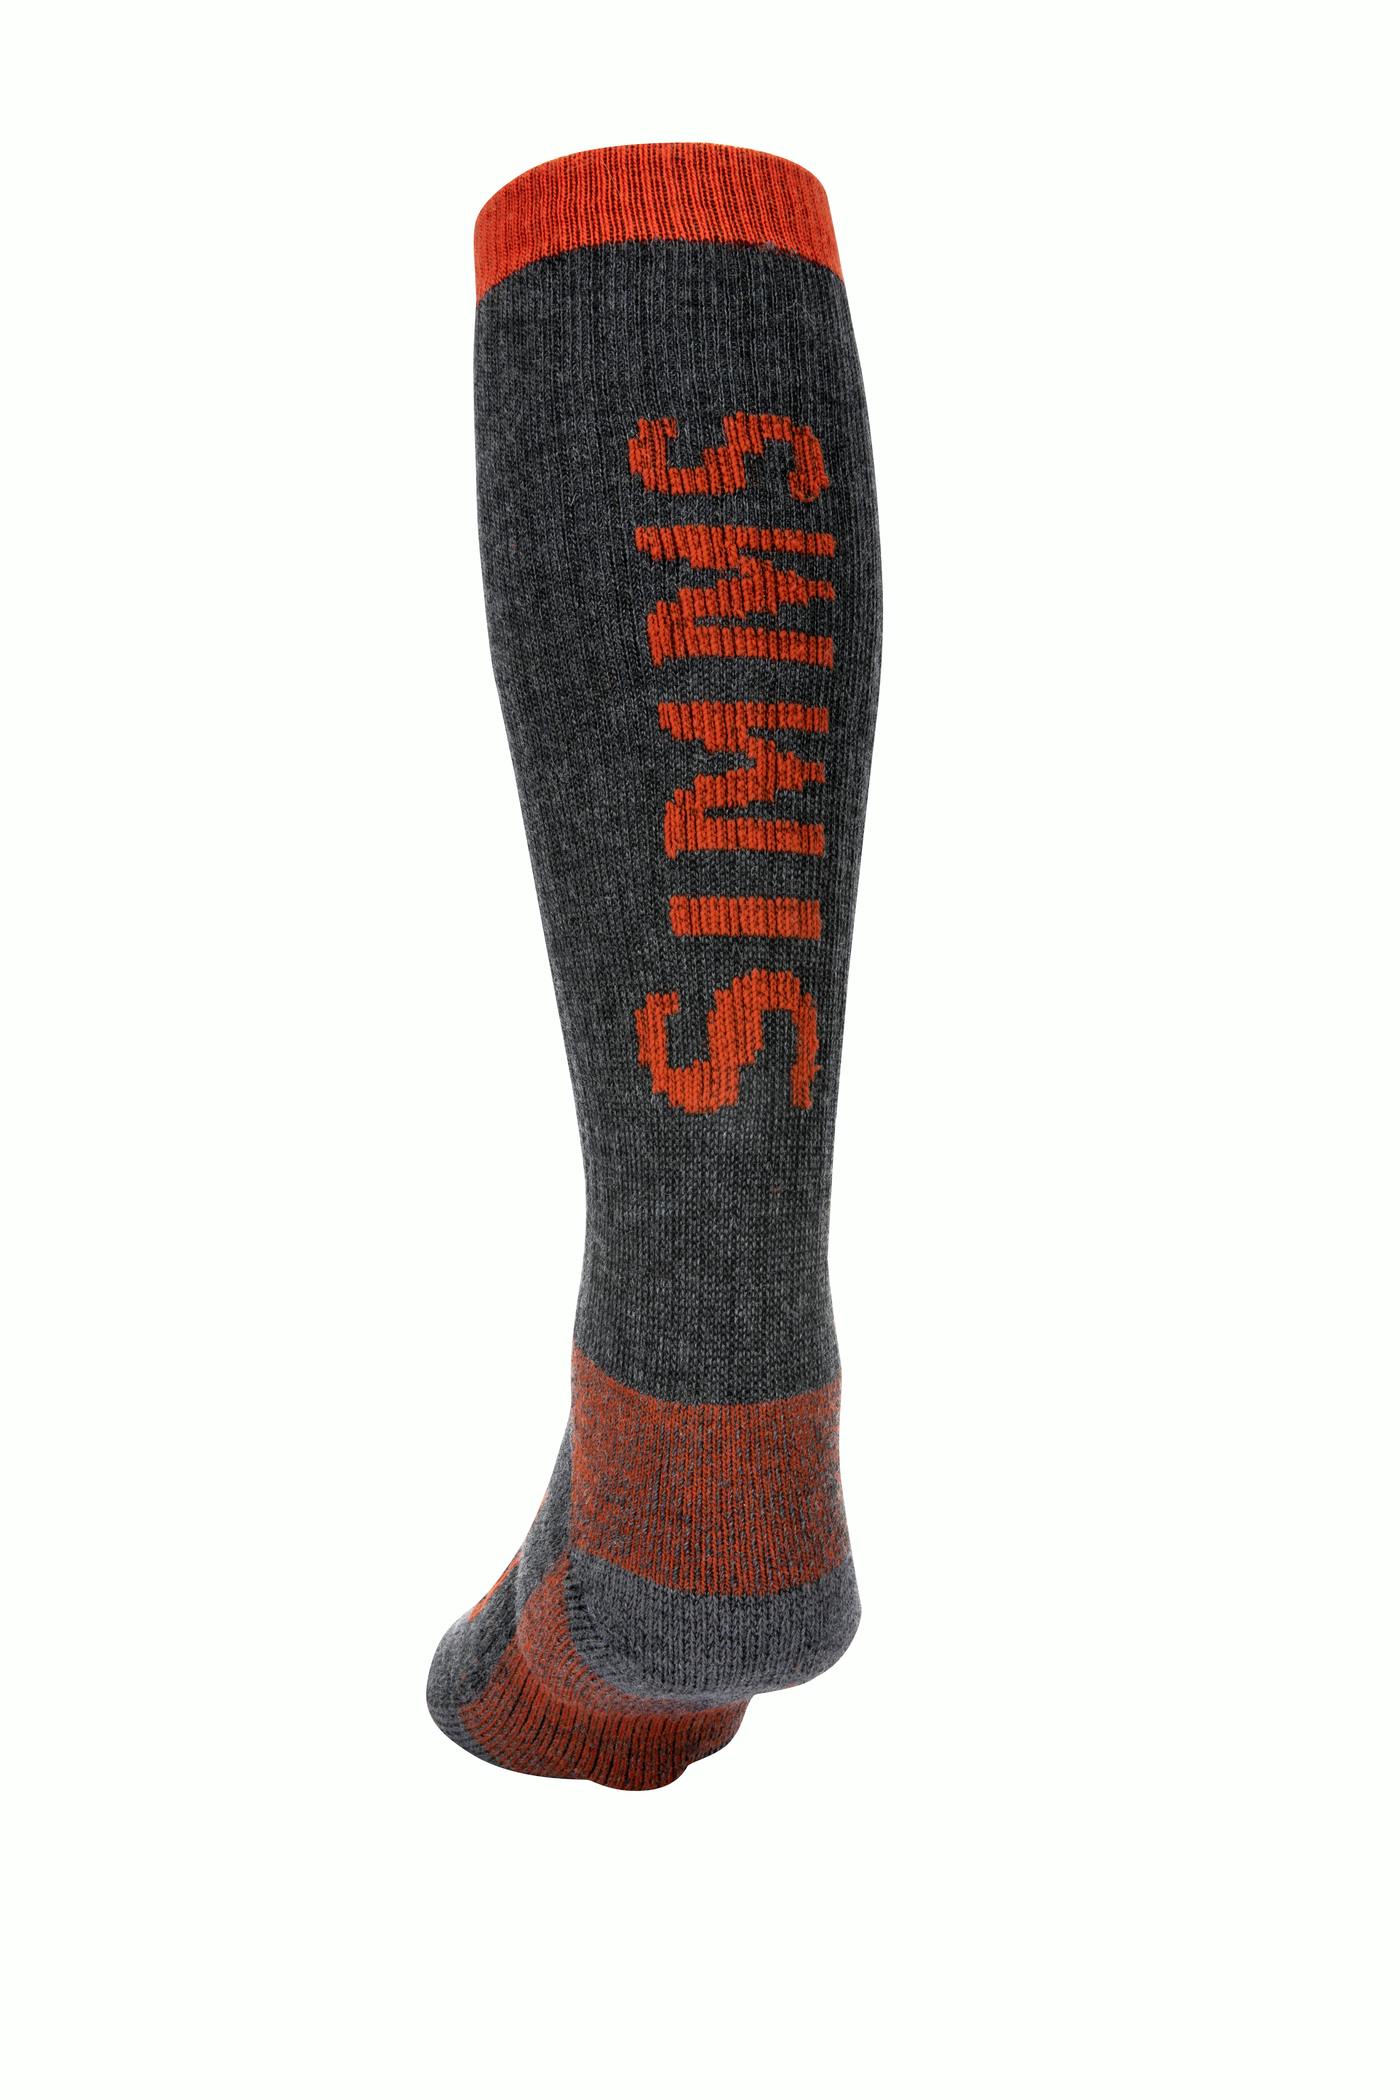 Simms Men's Merino Thermal OTC Sock